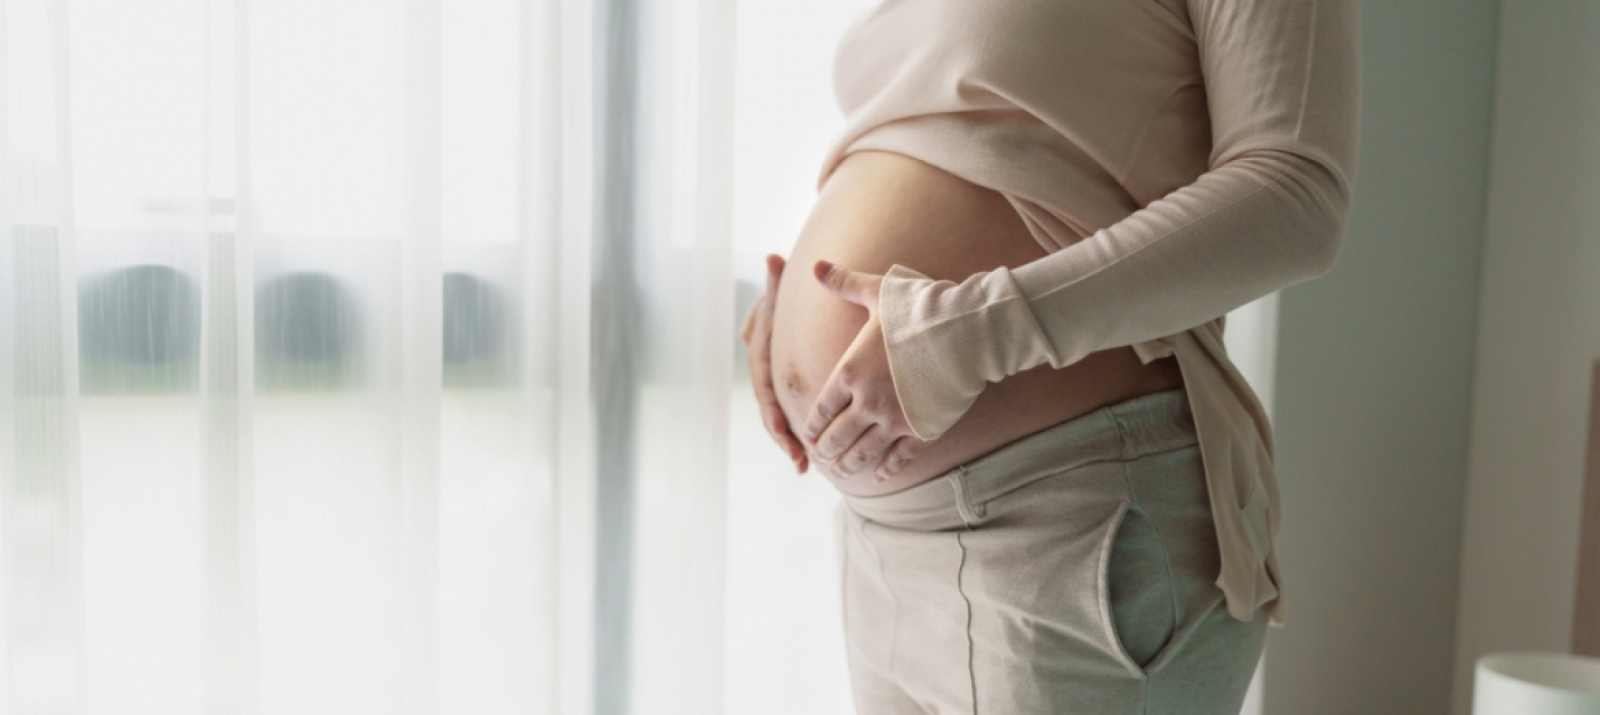 Hepatites Virais podem ser transmitidas da mãe para o bebê durante a gestação e no momento do parto